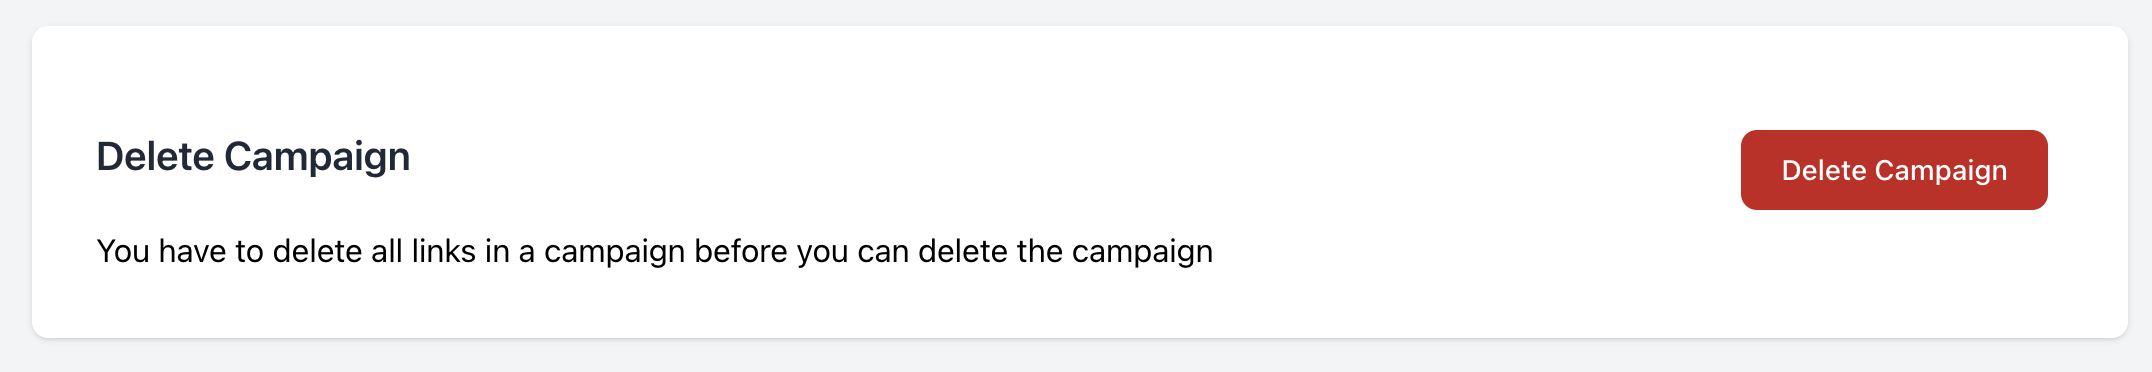 Delete Campaign image